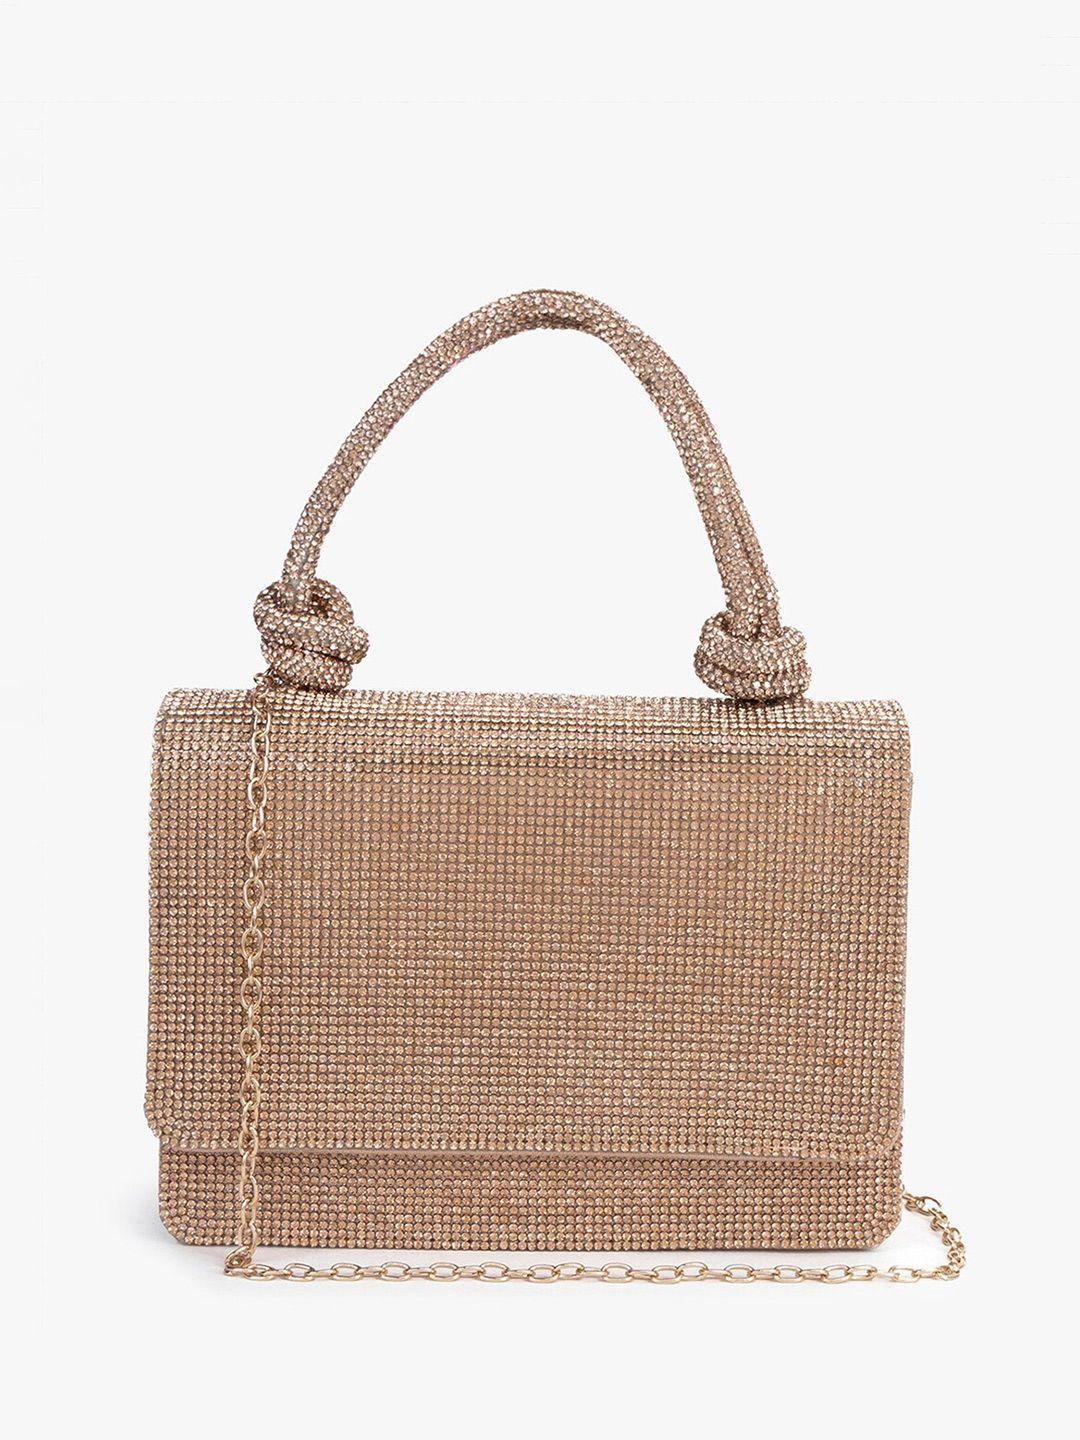 kazo embellished purse clutch